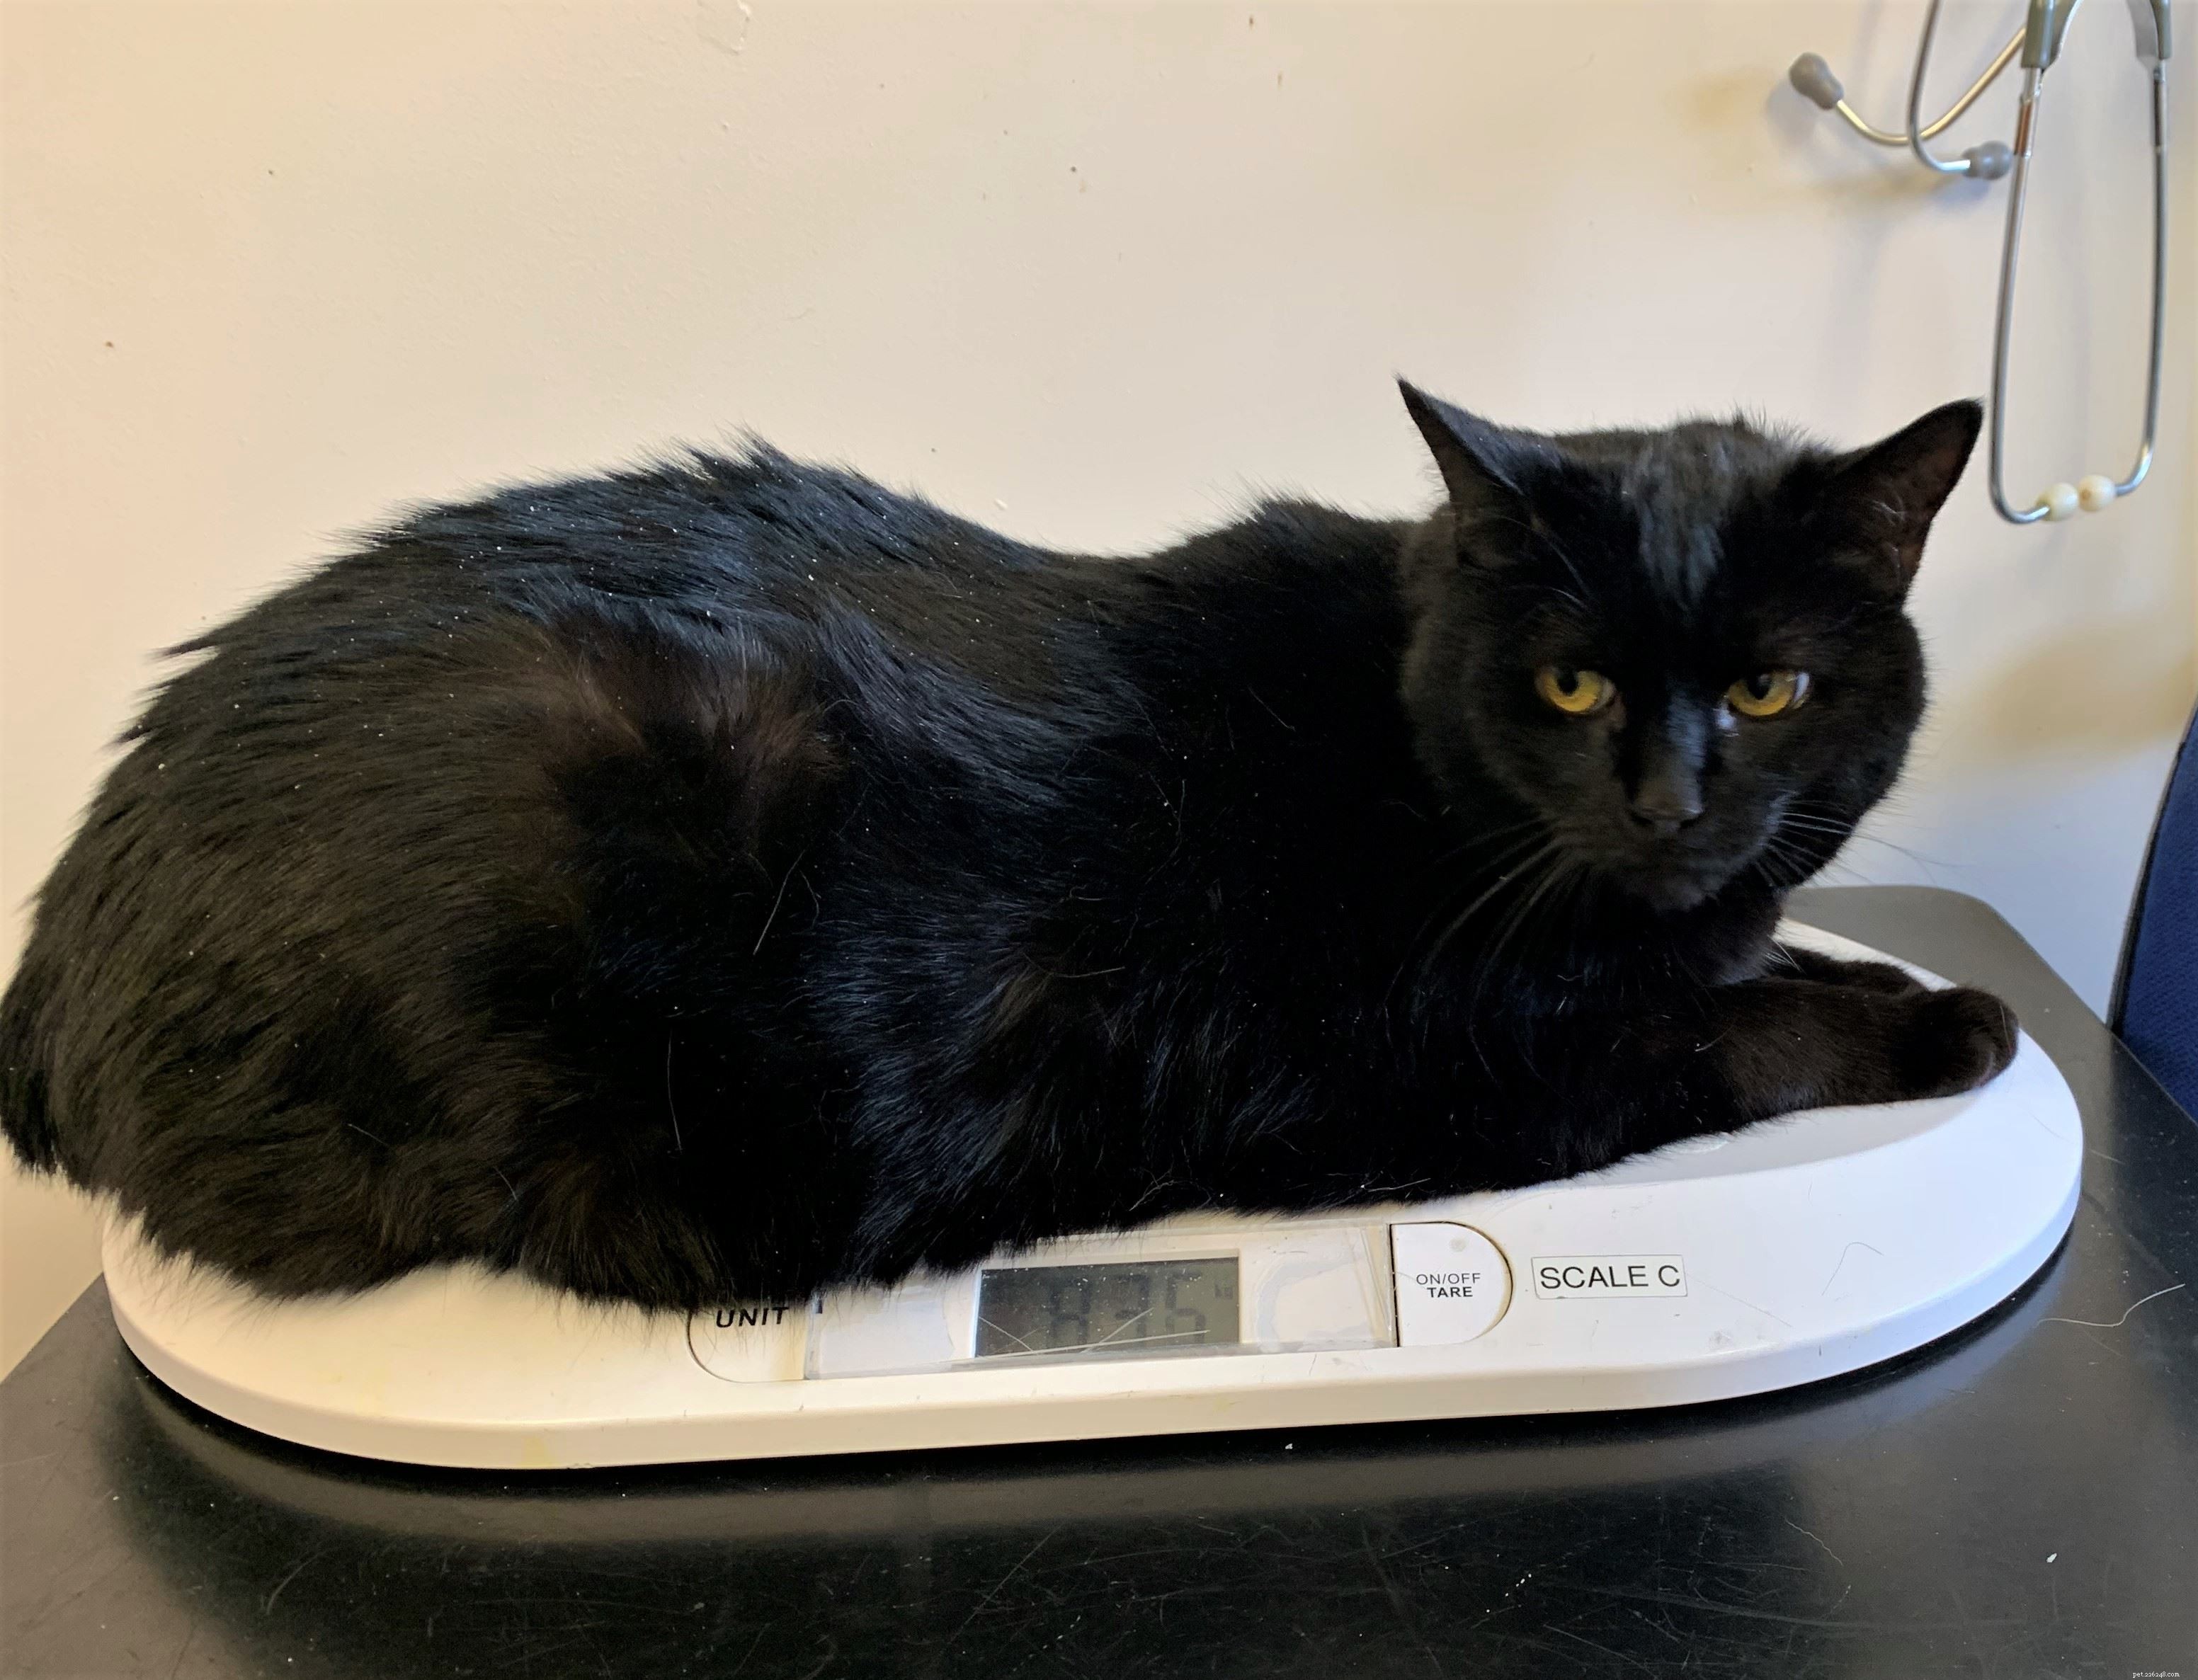 Толстый кот Колин весит в два раза больше обычного кота и нуждается в новом хозяине, который поможет ему справиться с лишним весом